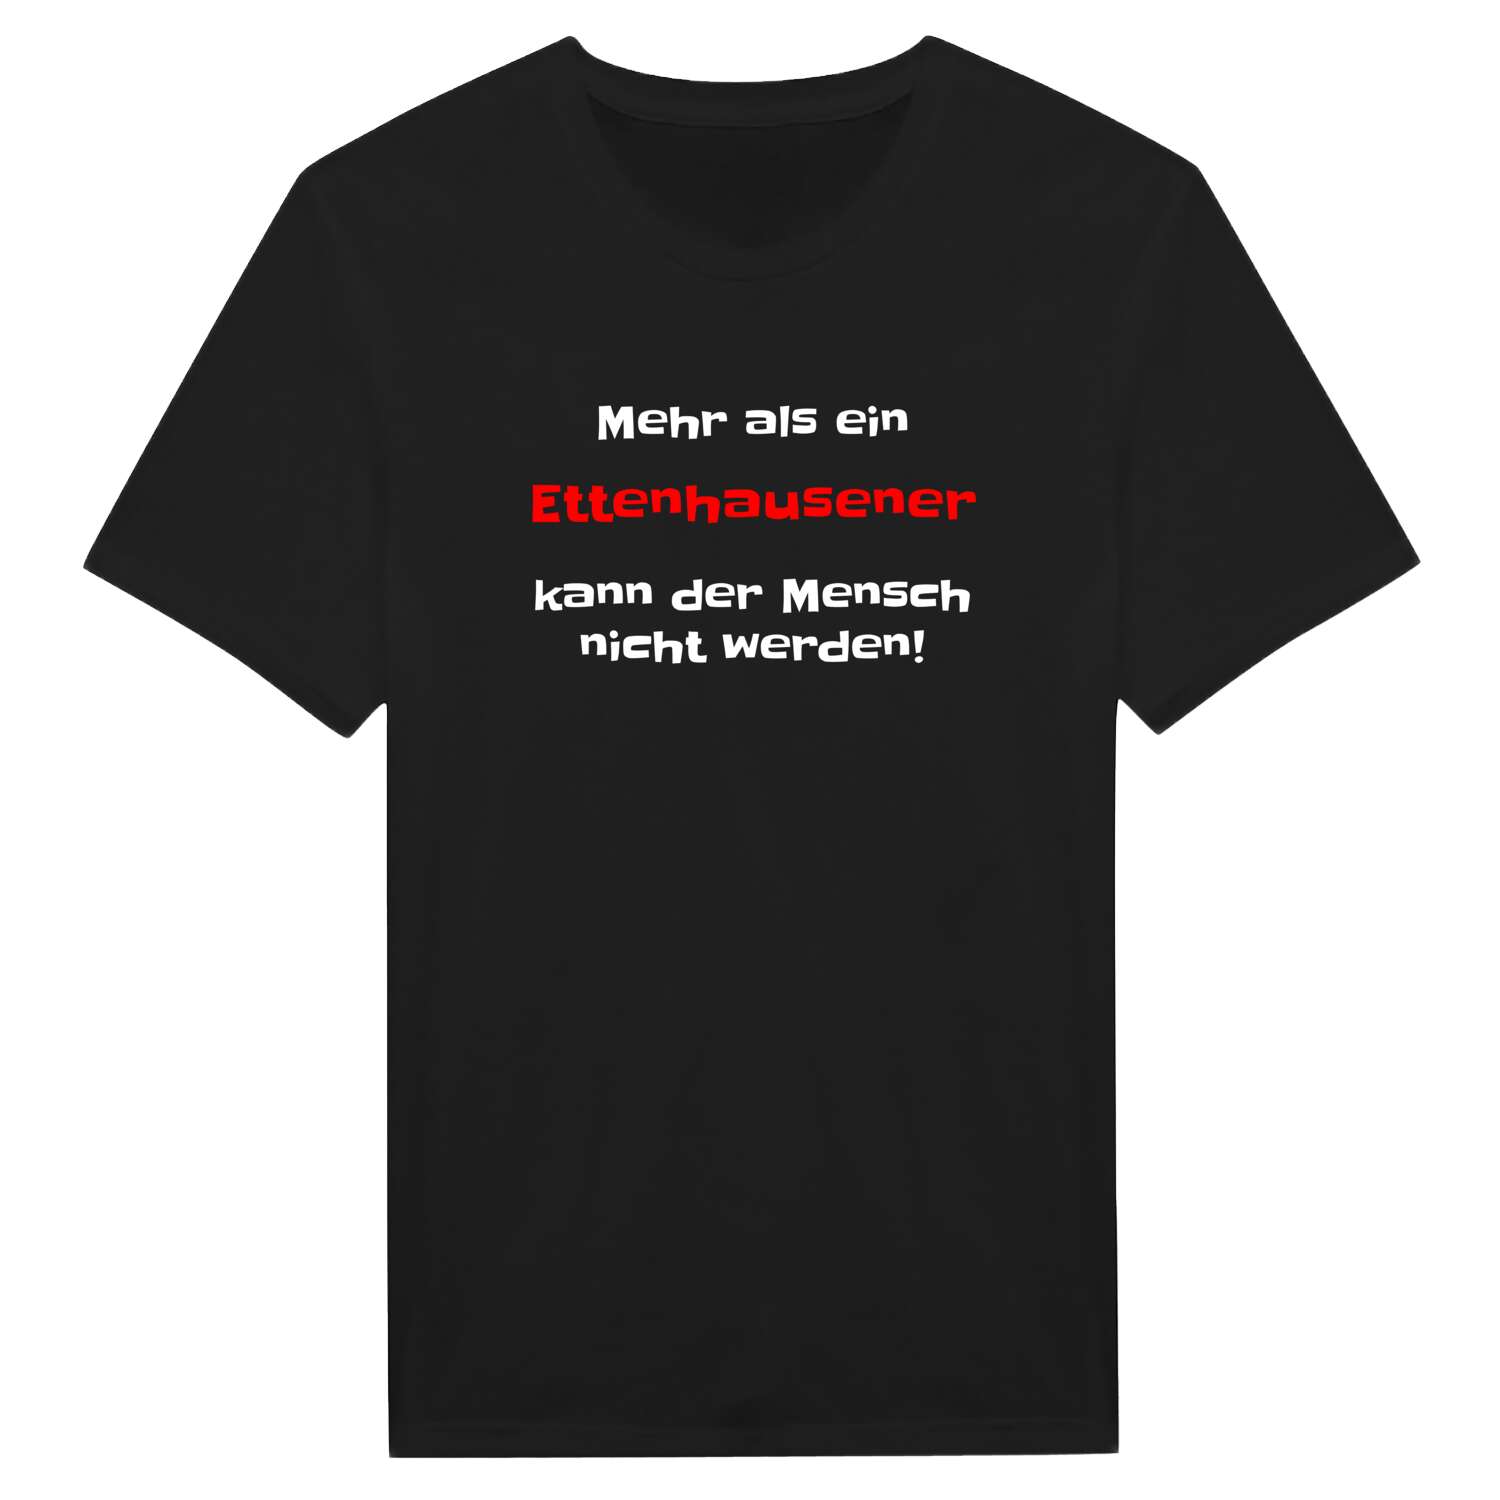 Ettenhausen T-Shirt »Mehr als ein«